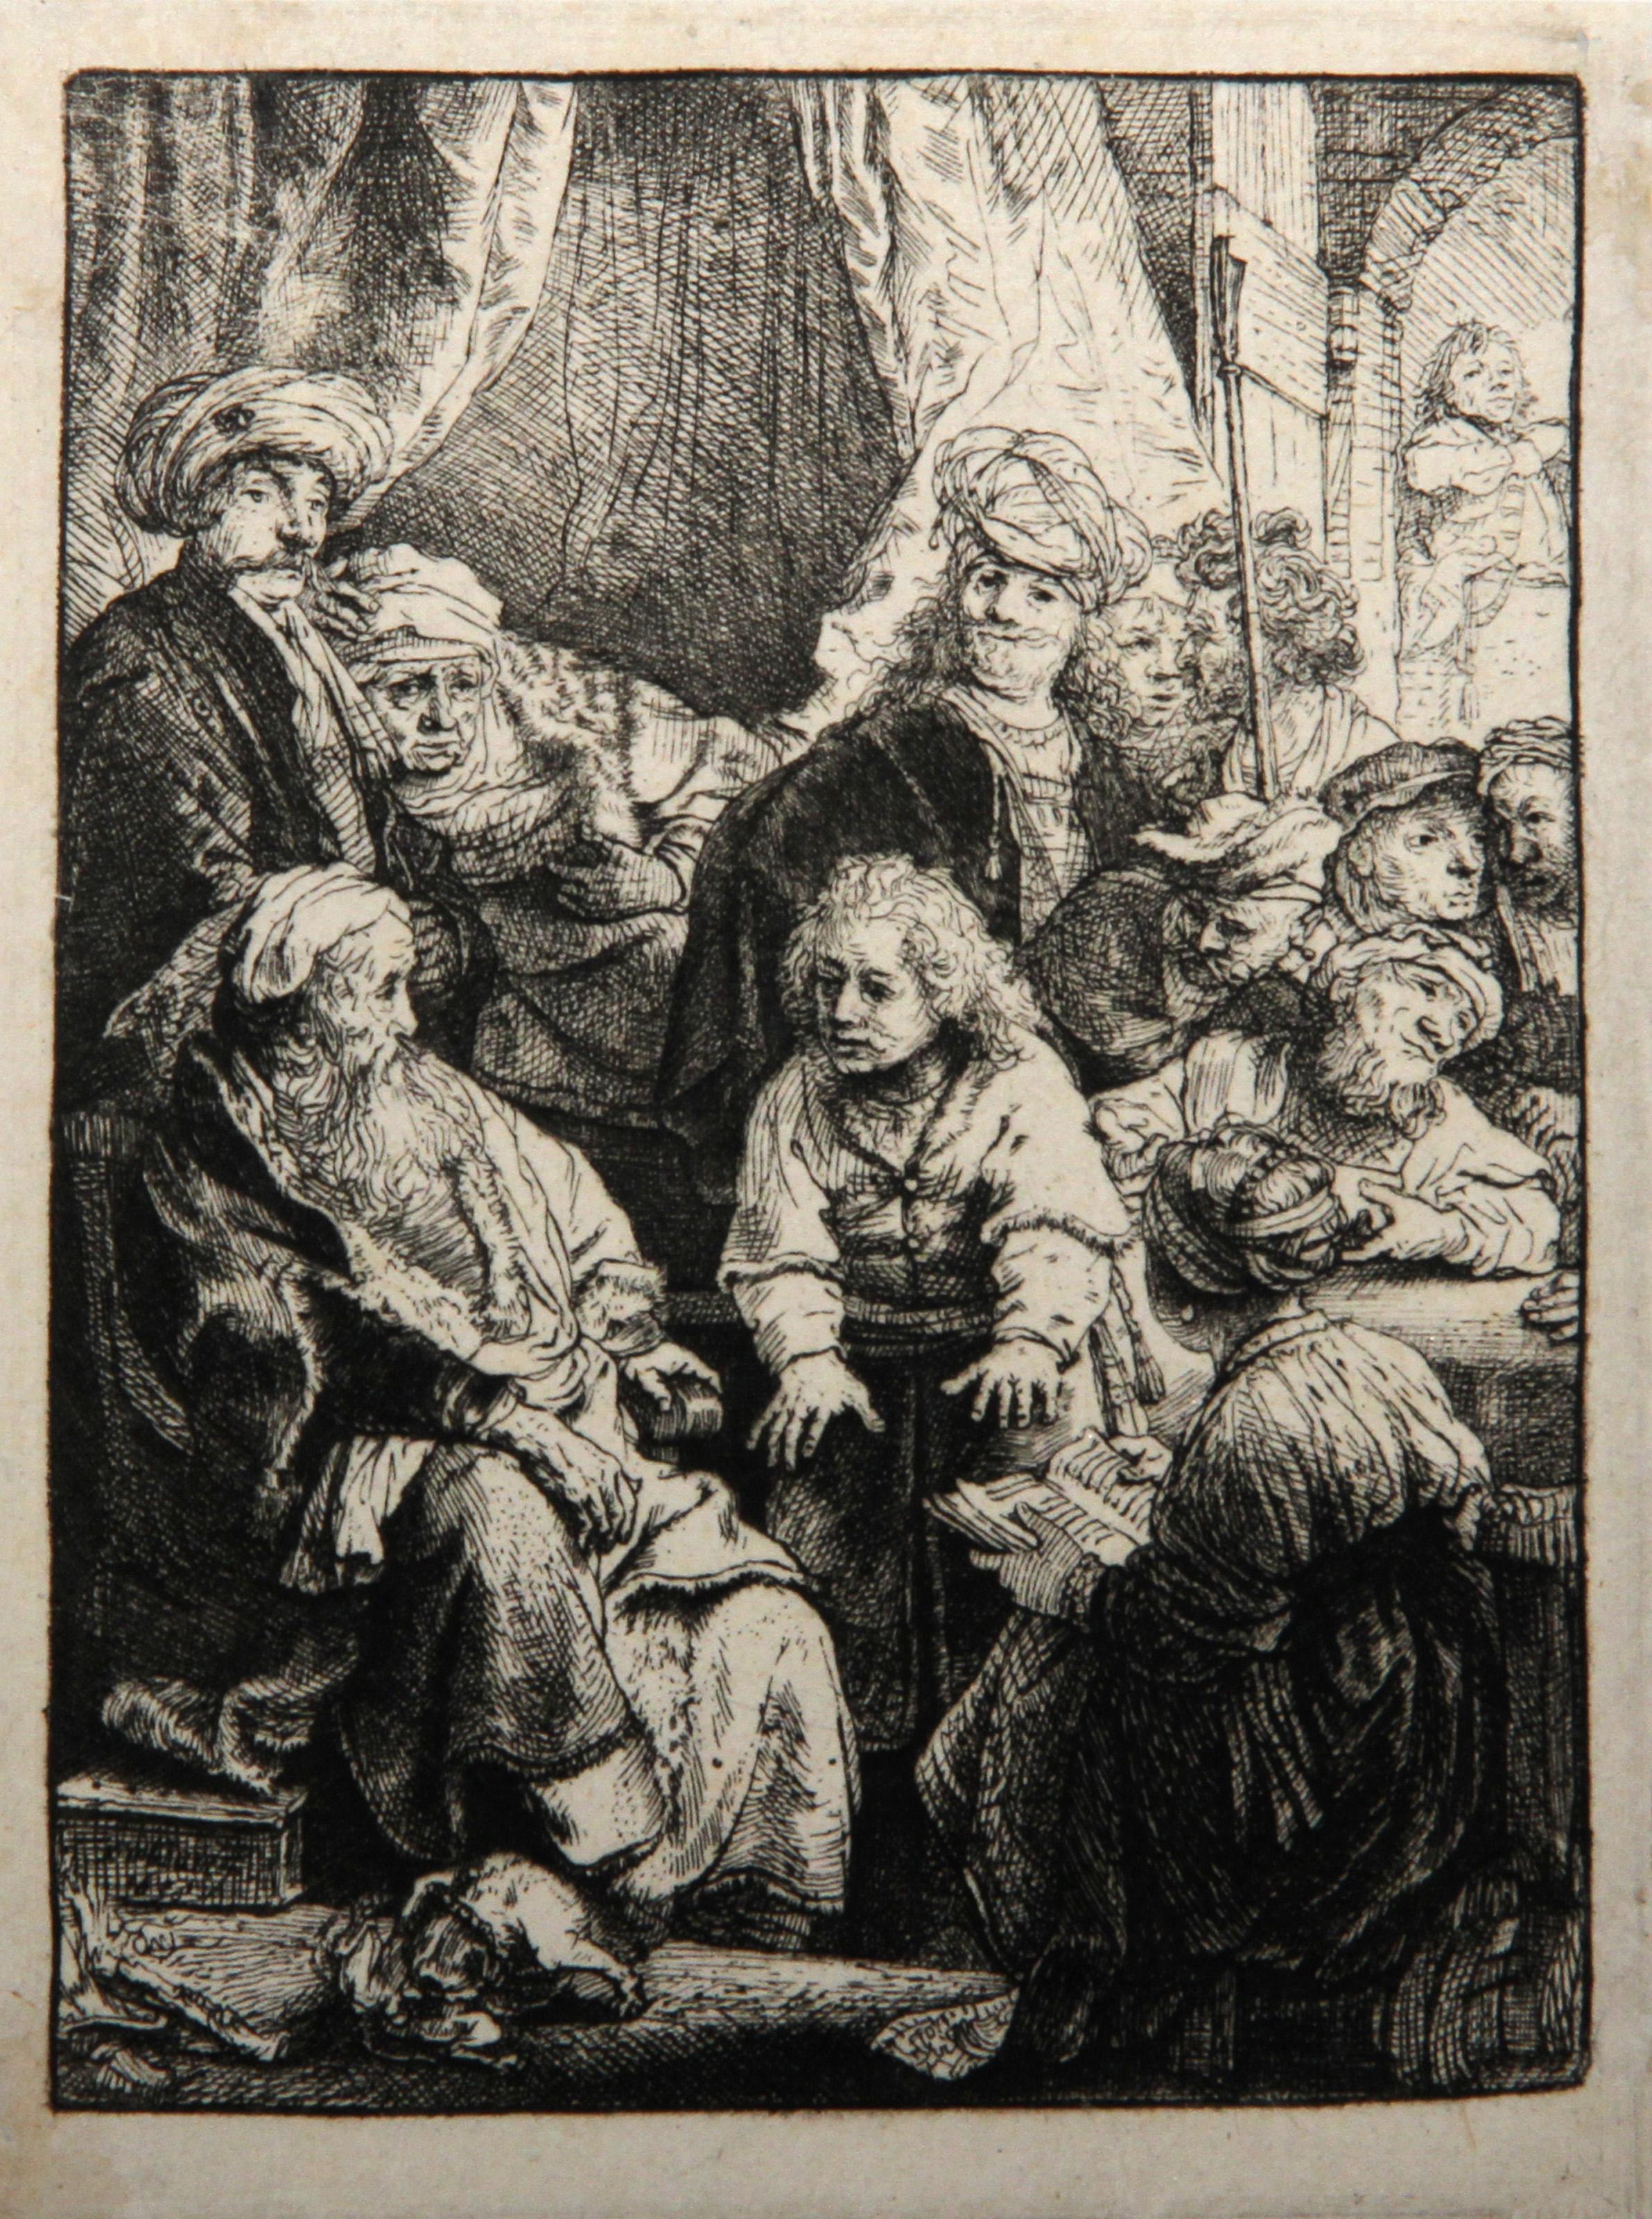 Künstler: Rembrandt van Rijn, nach Amand Durand, Niederländer (1606 - 1669) -  Joseph Racontant Ses Songes (B37), Jahr: 1878 (von Original 1638), Medium: Heliogravüre, Größe: 4.75  x 3.5 in. (12.07  x 8,89 cm), Drucker: Amand Durand, Beschreibung: